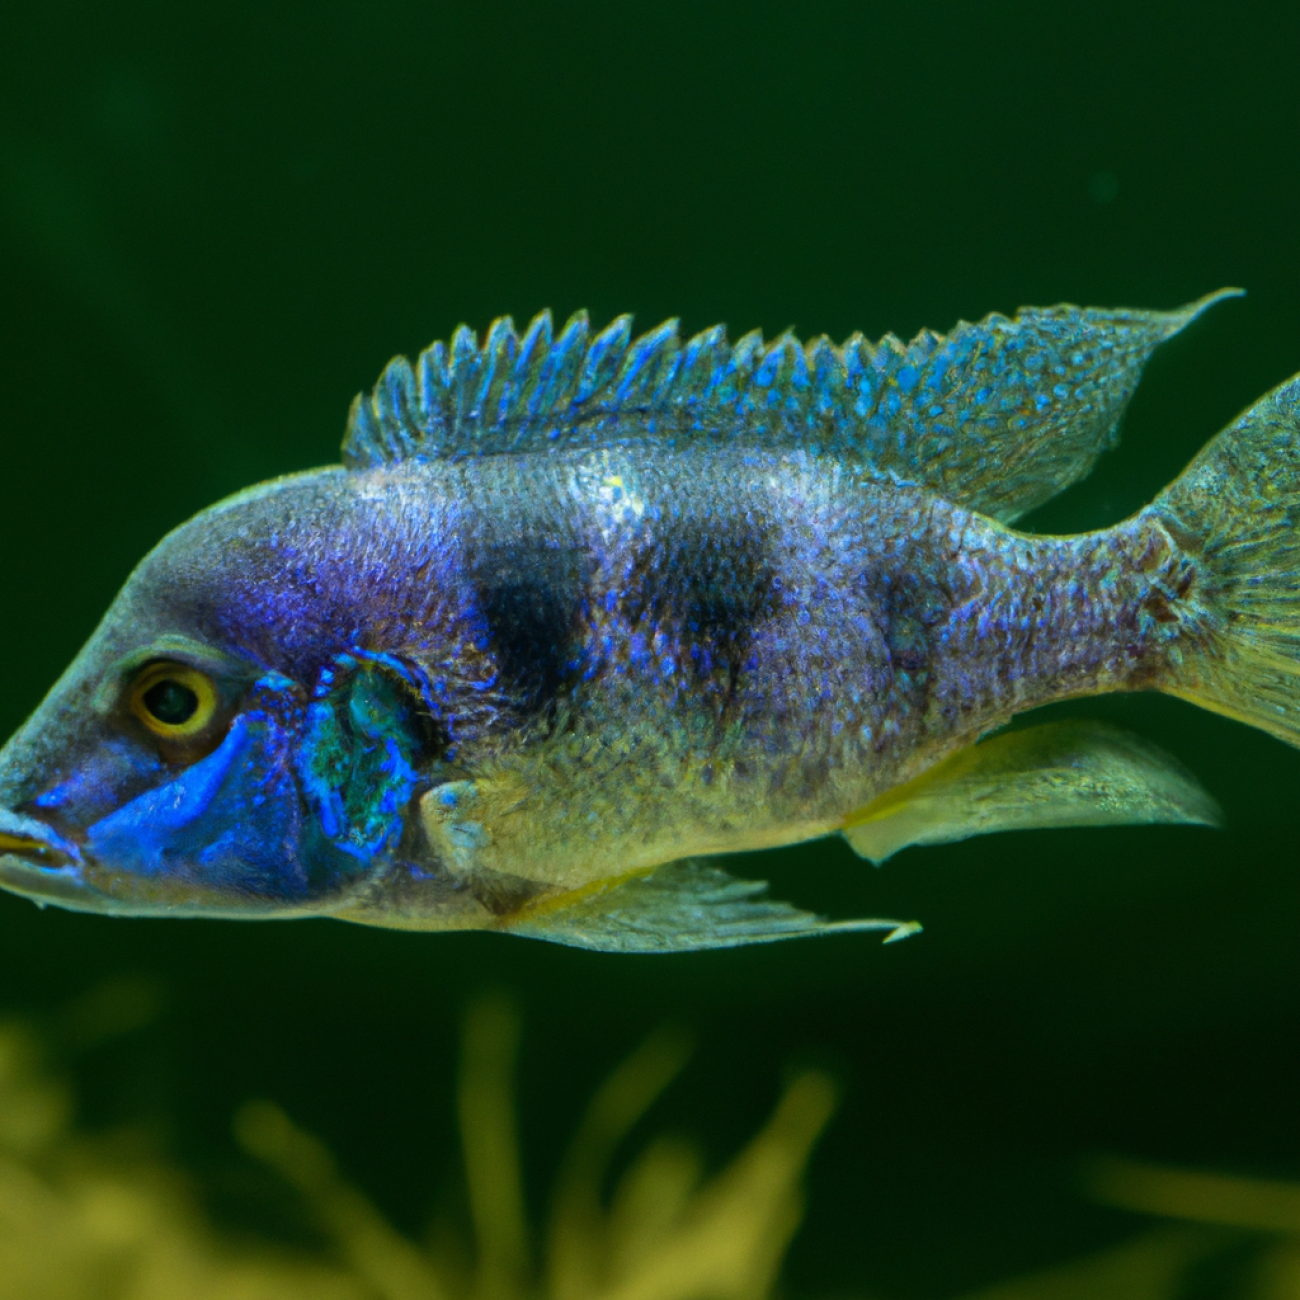 7. Záchytne krásna ryba: Naučte se rozlišovat pohlaví akary modré